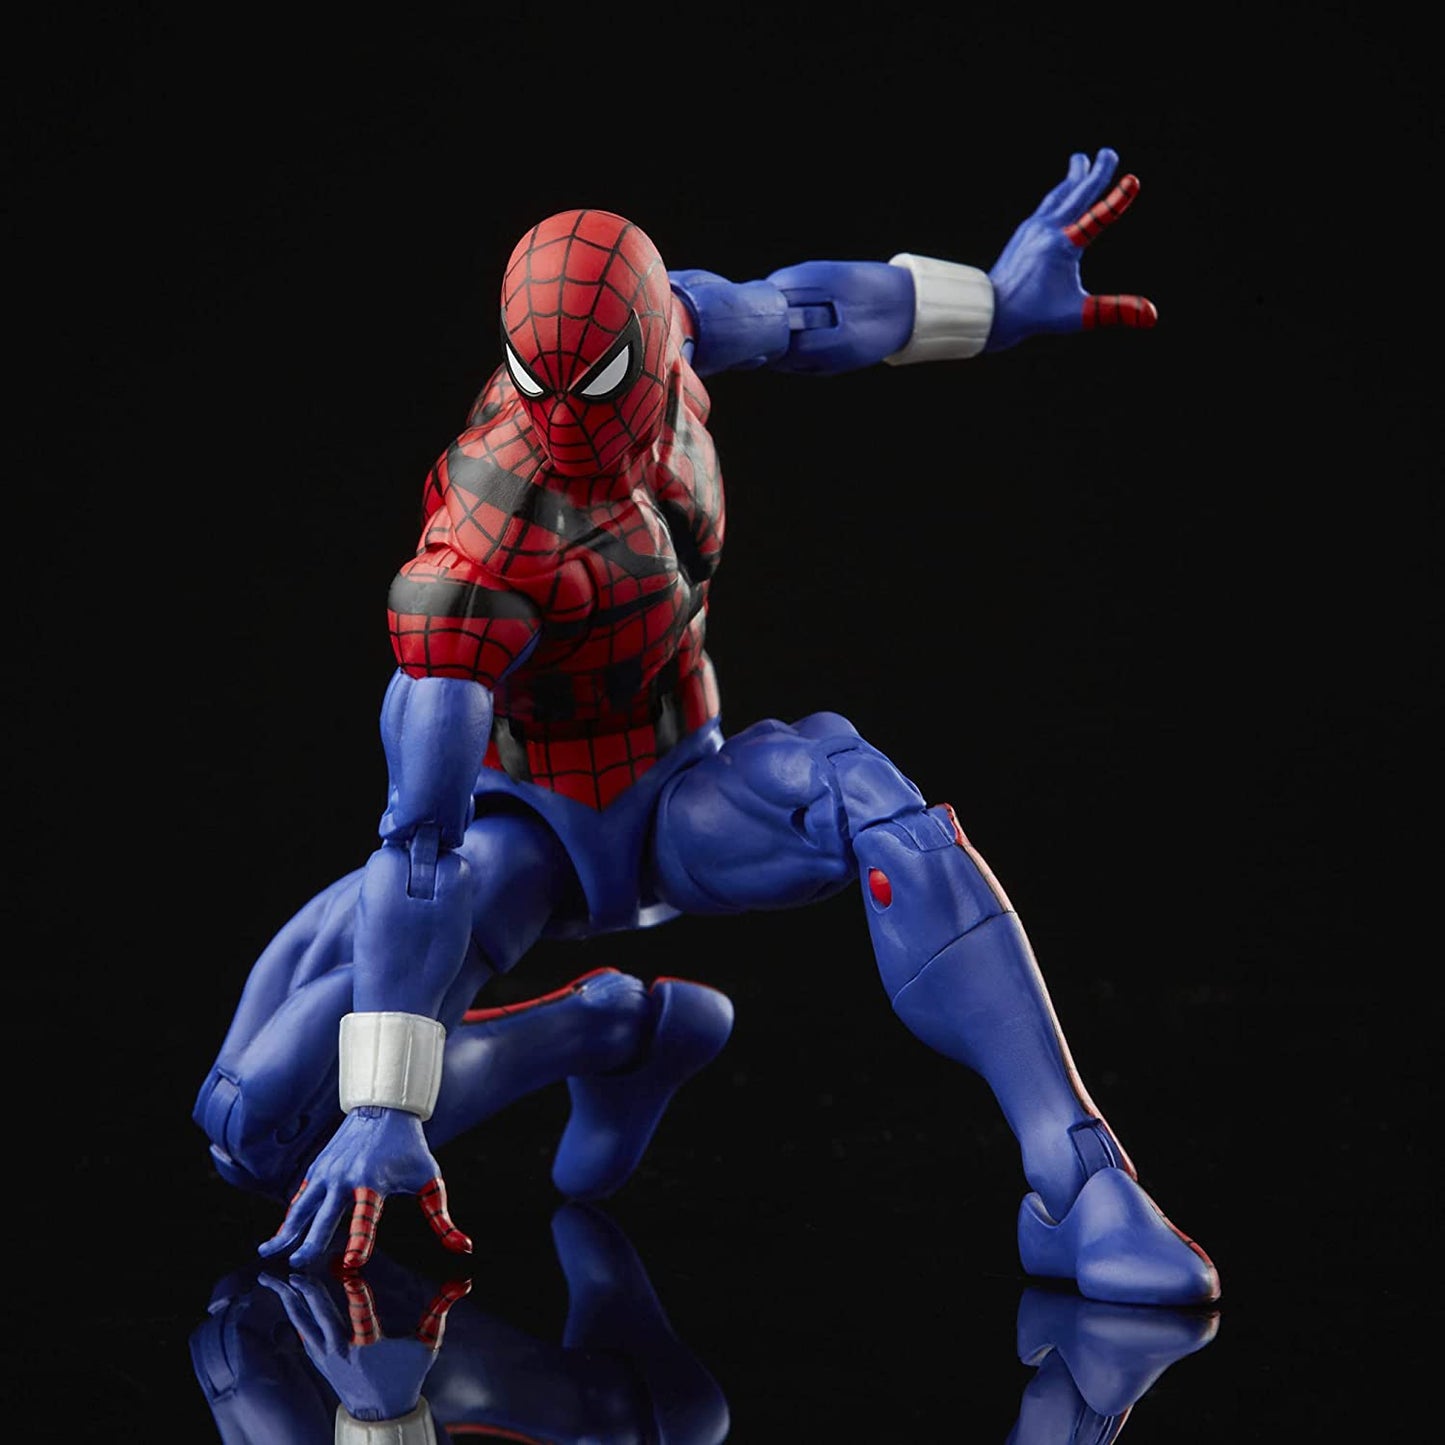 Spider-Man Retro Marvel Legends Ben Reilly Spider-Man 6-Inch Action Figure - Retro Heretoserveyou